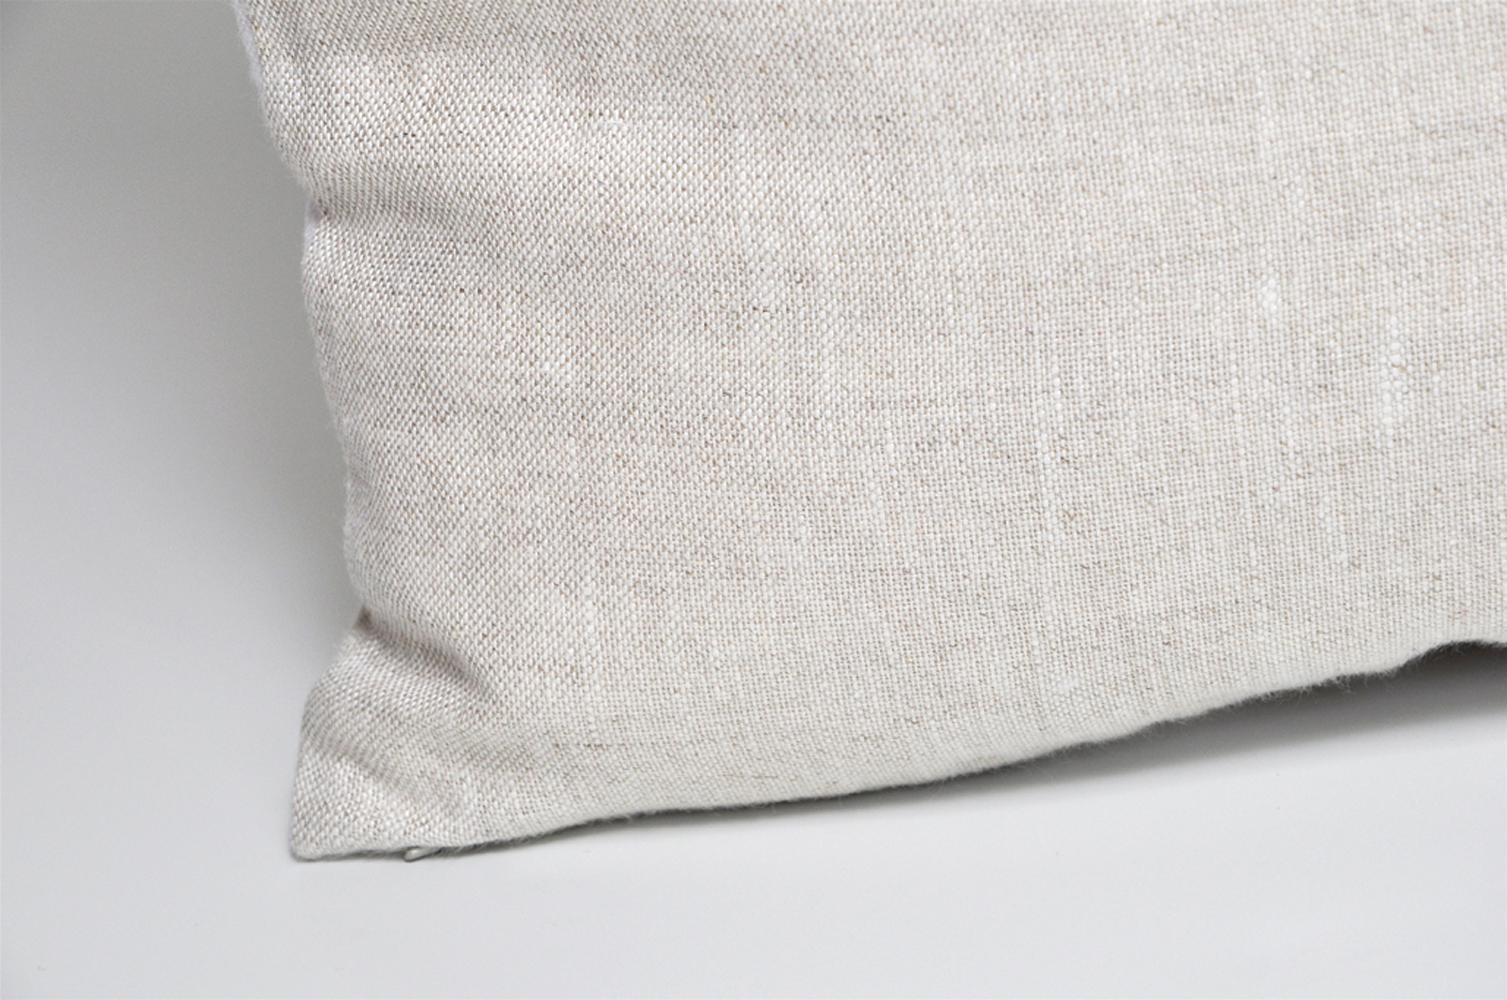 Designer Vintage Pucci Scarf Pillow Irish Linen Backing 4